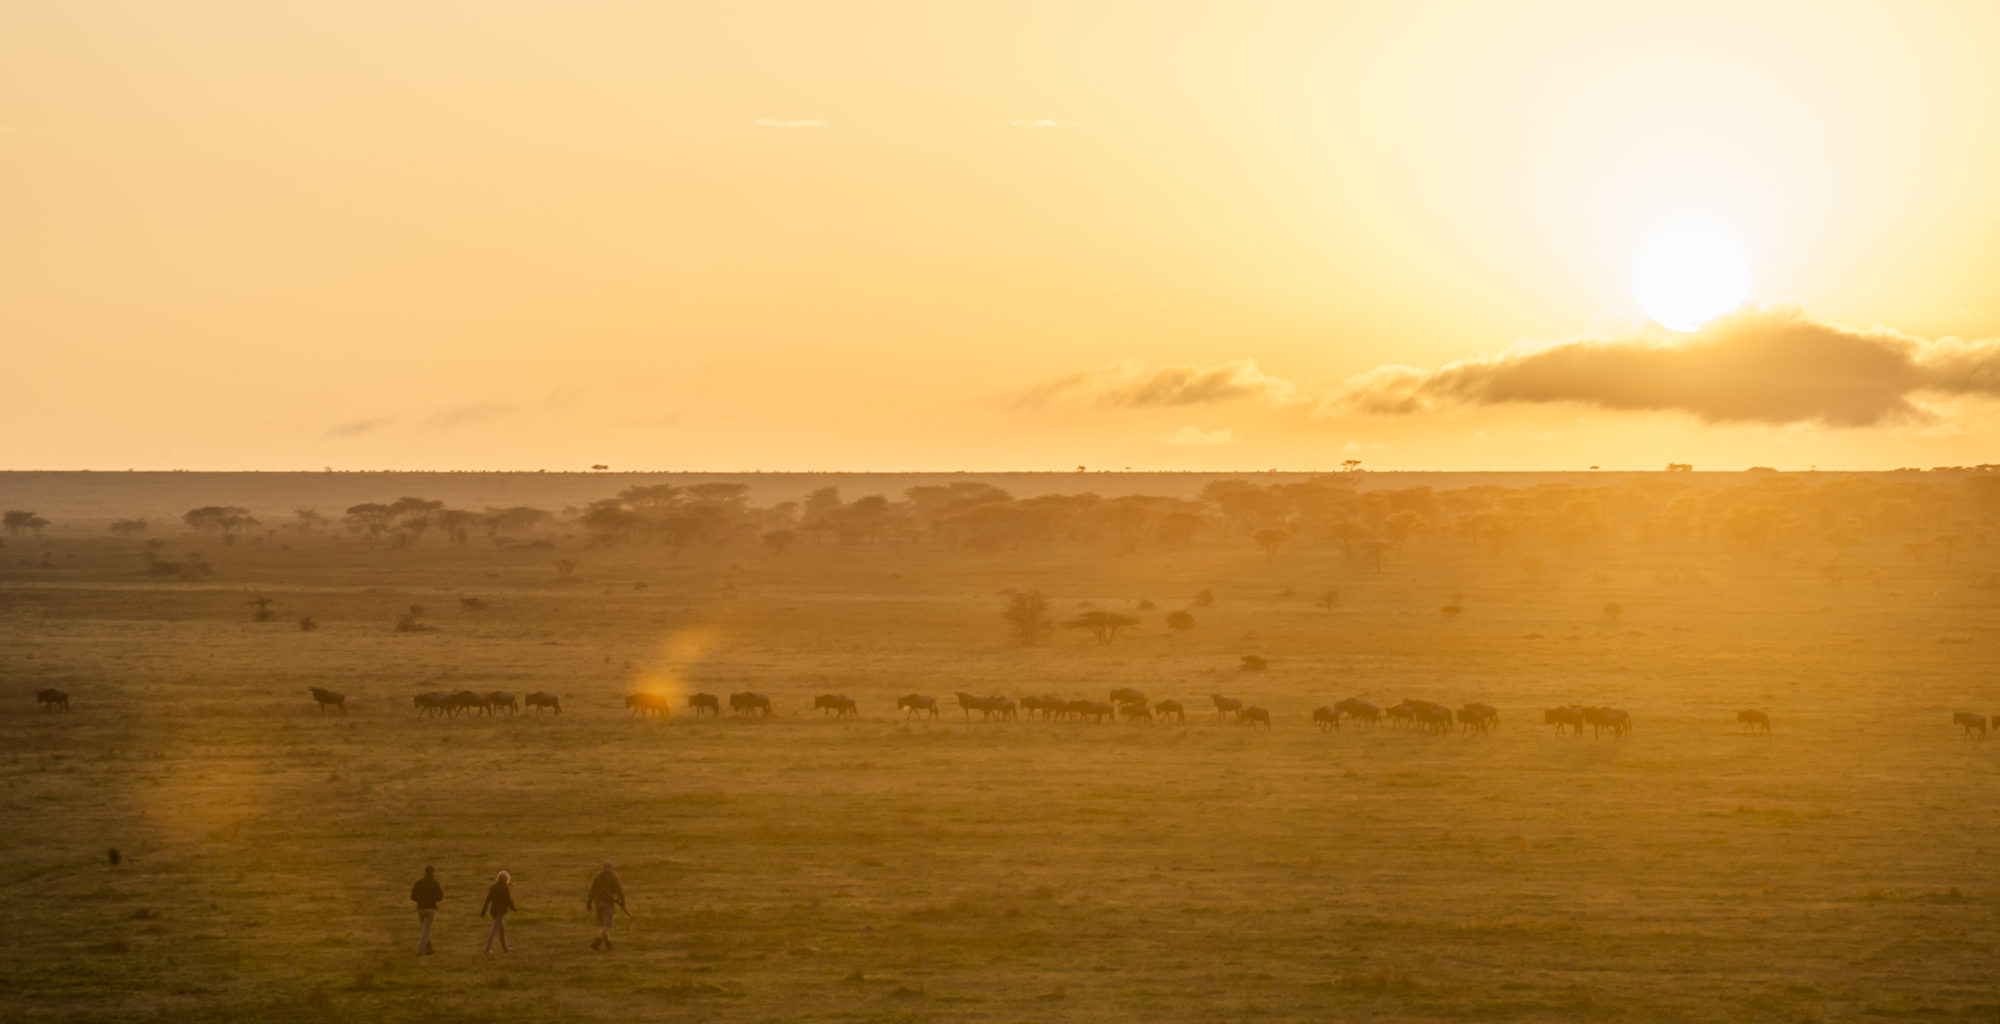 The Serengeti Plains